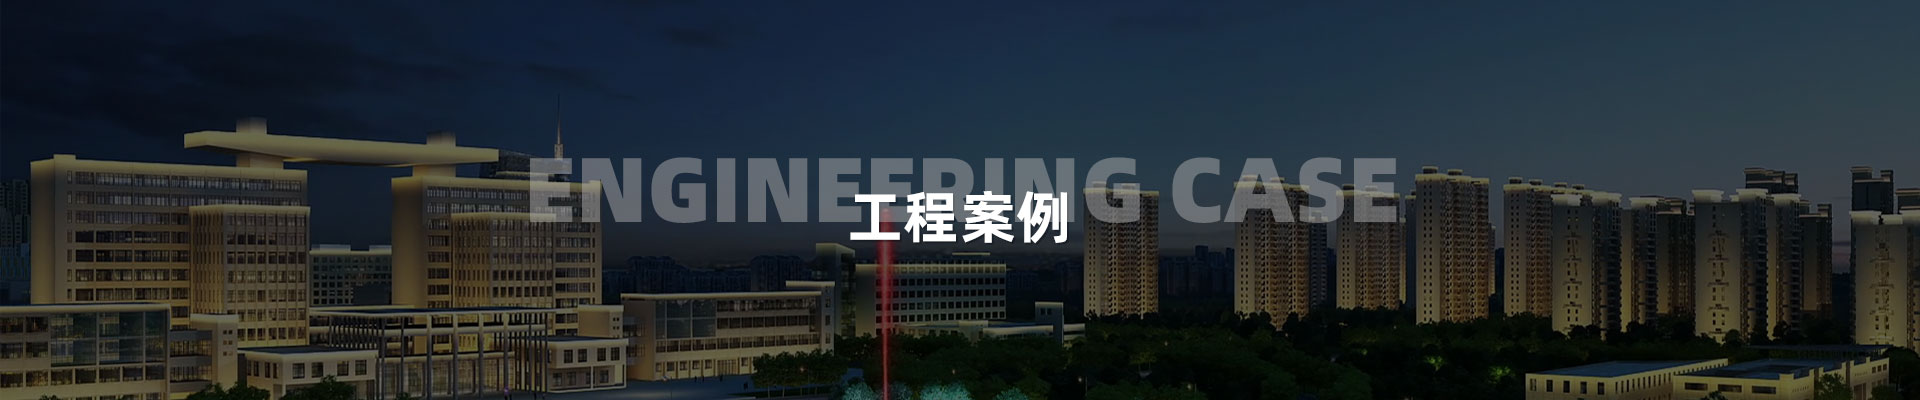 視頻案例-深圳市中筑景觀亮化照明科技有限公司